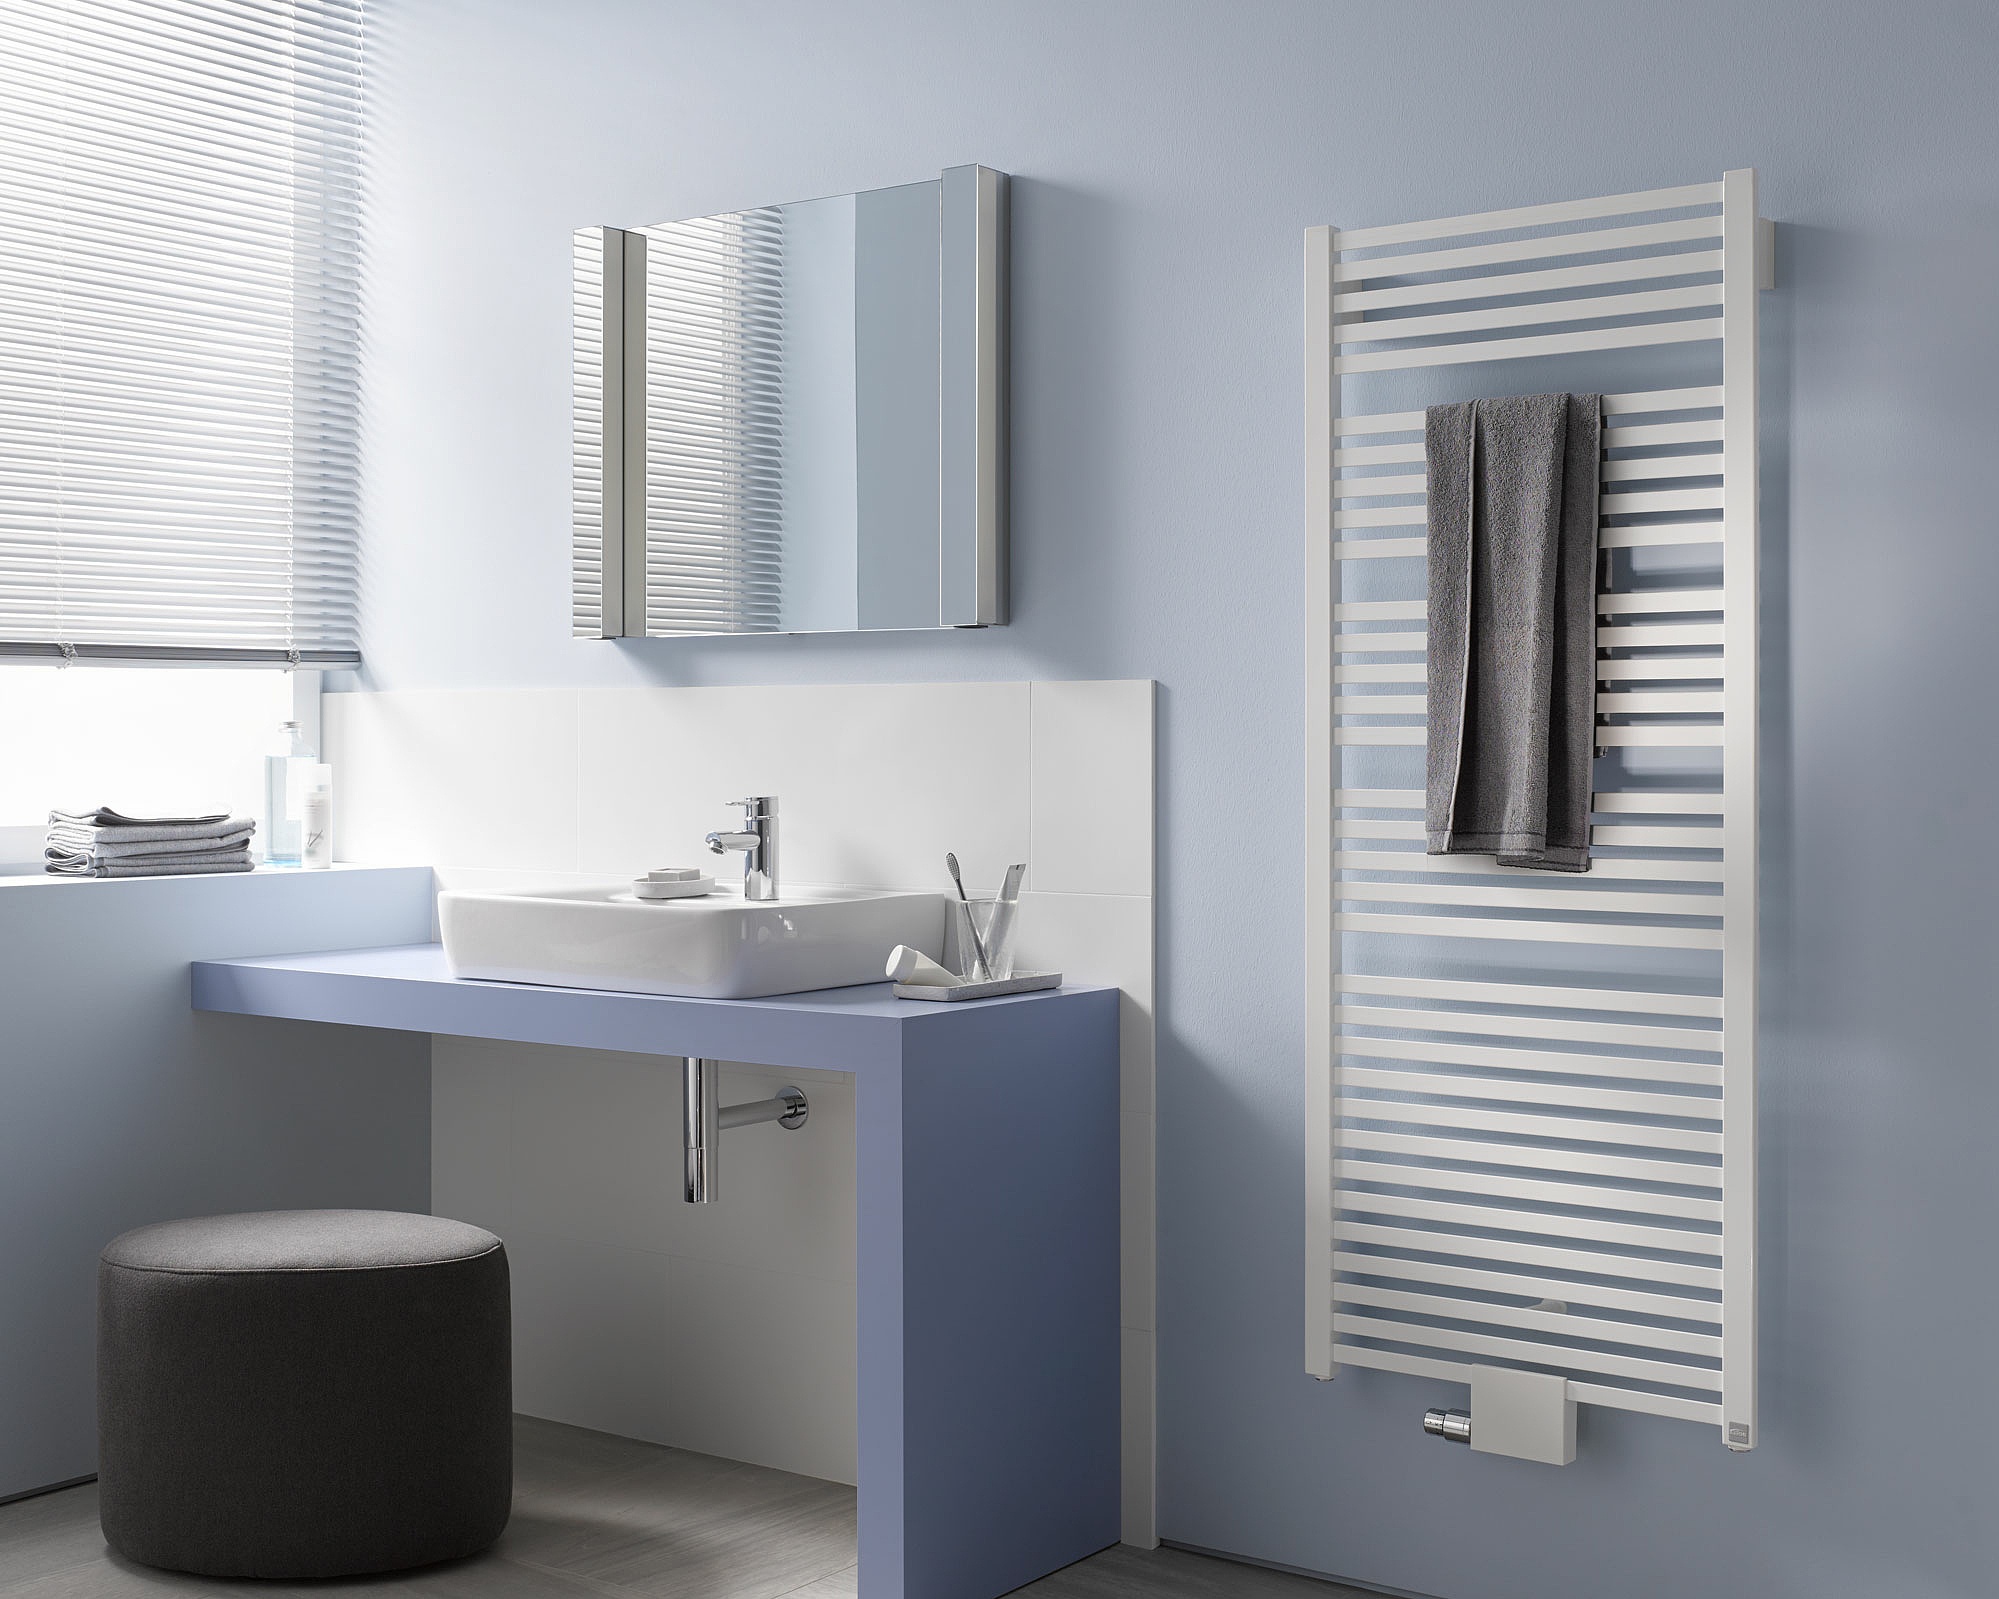 Grzejniki dekoracyjne i łazienkowe Kermi Geneo quadris oferują dużą swobodę przy projektowaniu i wykonywaniu instalacji.